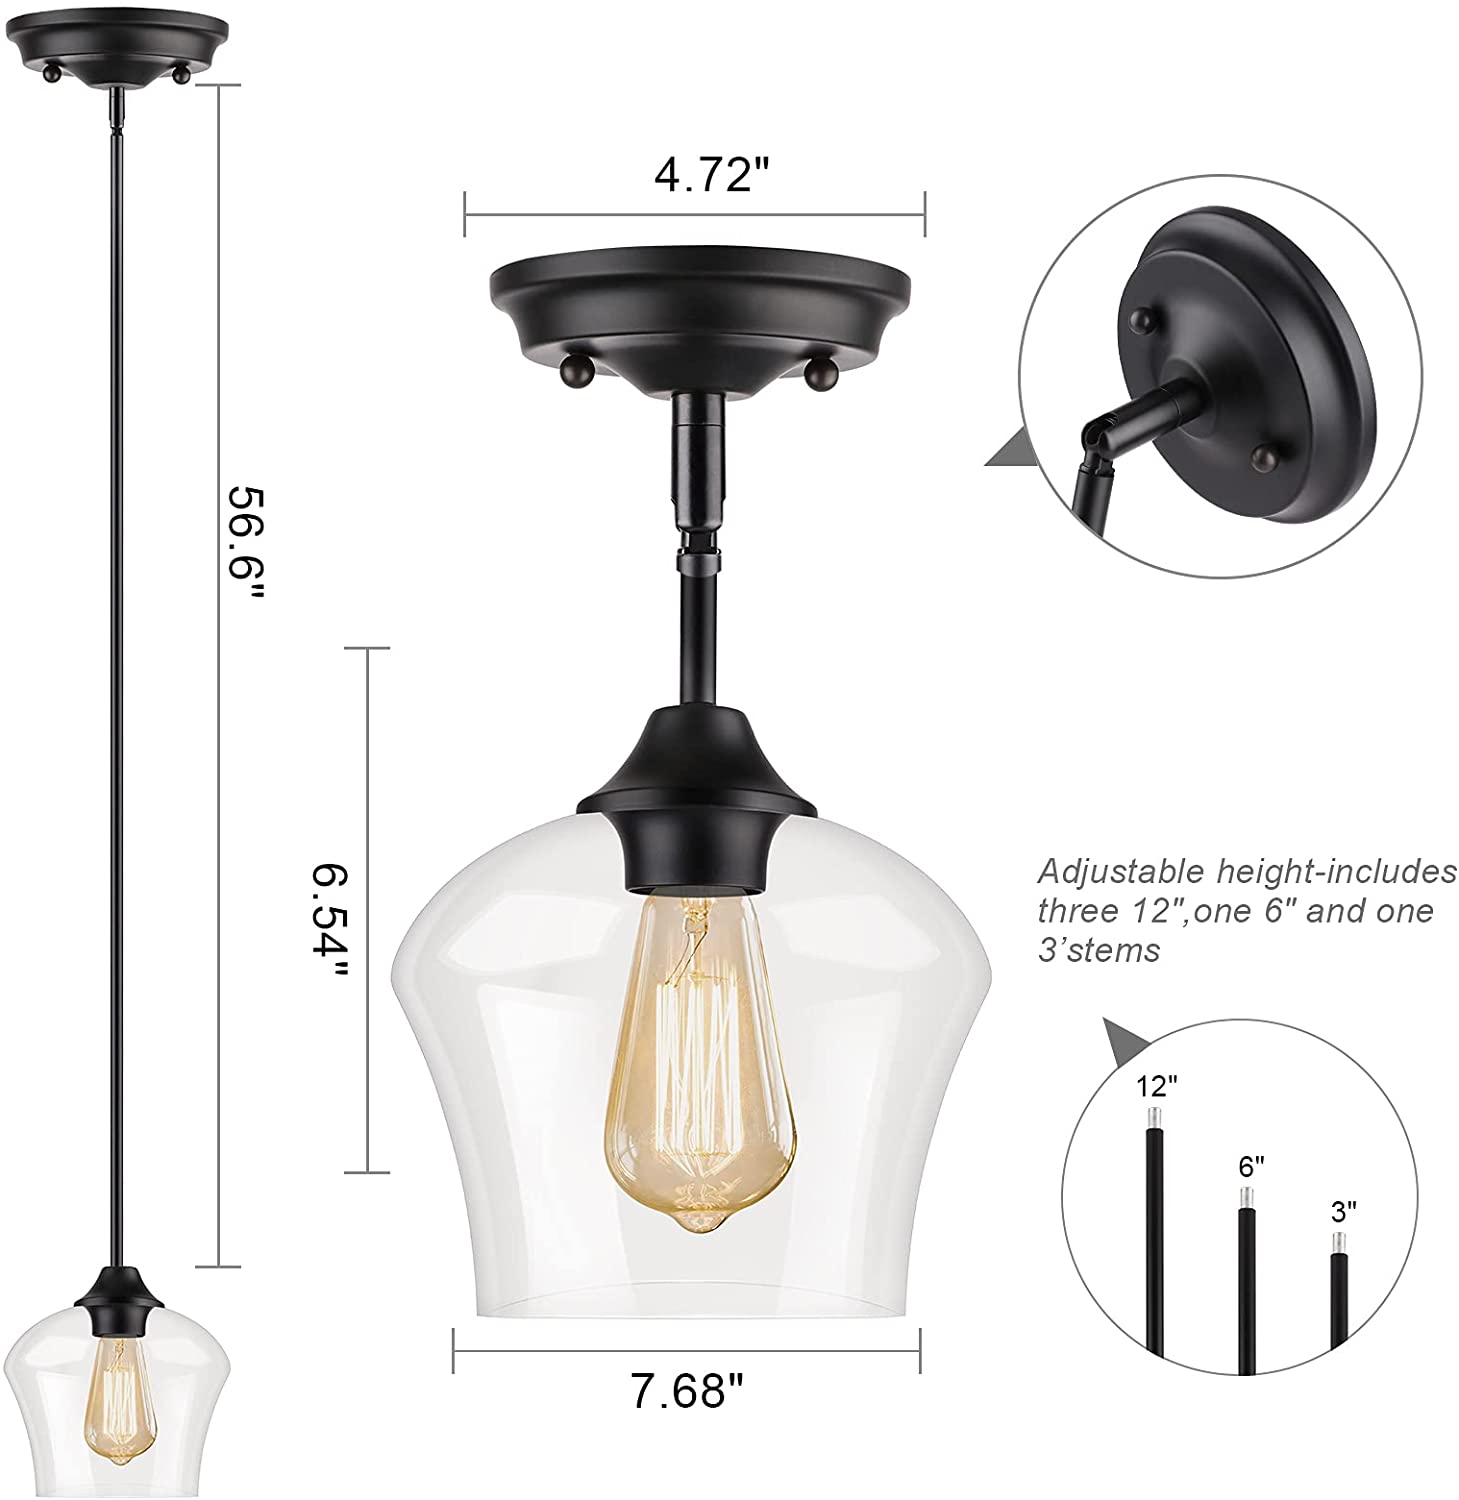 Glass kitchen light fixtures black adjustable hanging lights for kitchen